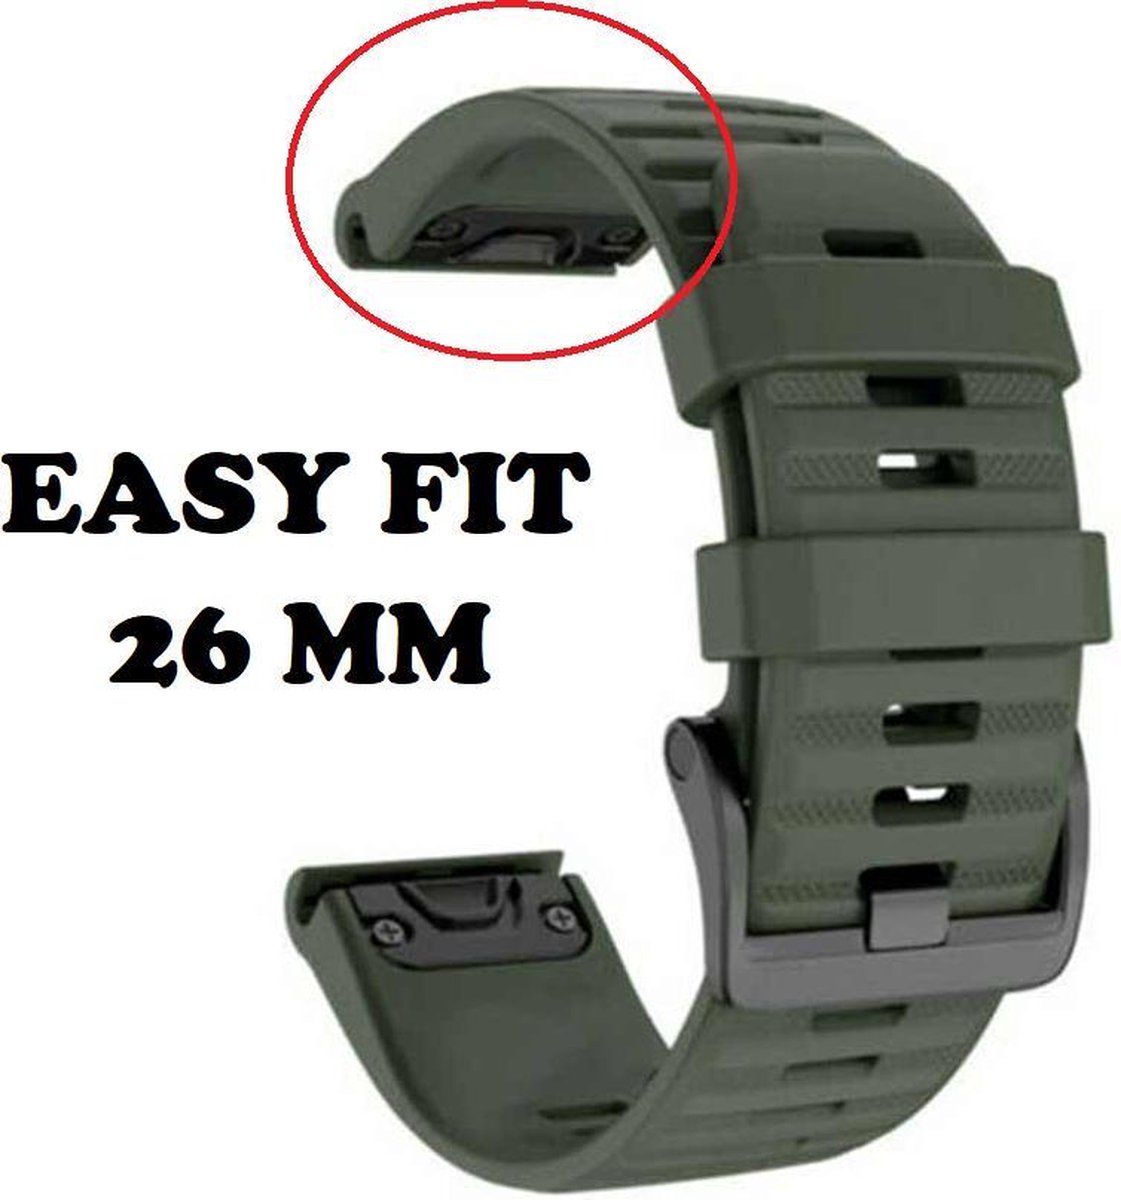 Firsttee - Siliconen Horlogeband - EASY FIT - 26 MM - Voor GARMIN - LEGERGROEN - Horlogebandjes - Quick Release - Easy Click - Garmin – Fenix 5X – Fenix 6X - Fenix 3 - Horloge bandje - Golfkleding - Golf accessoires – Cadeau - Firsttee